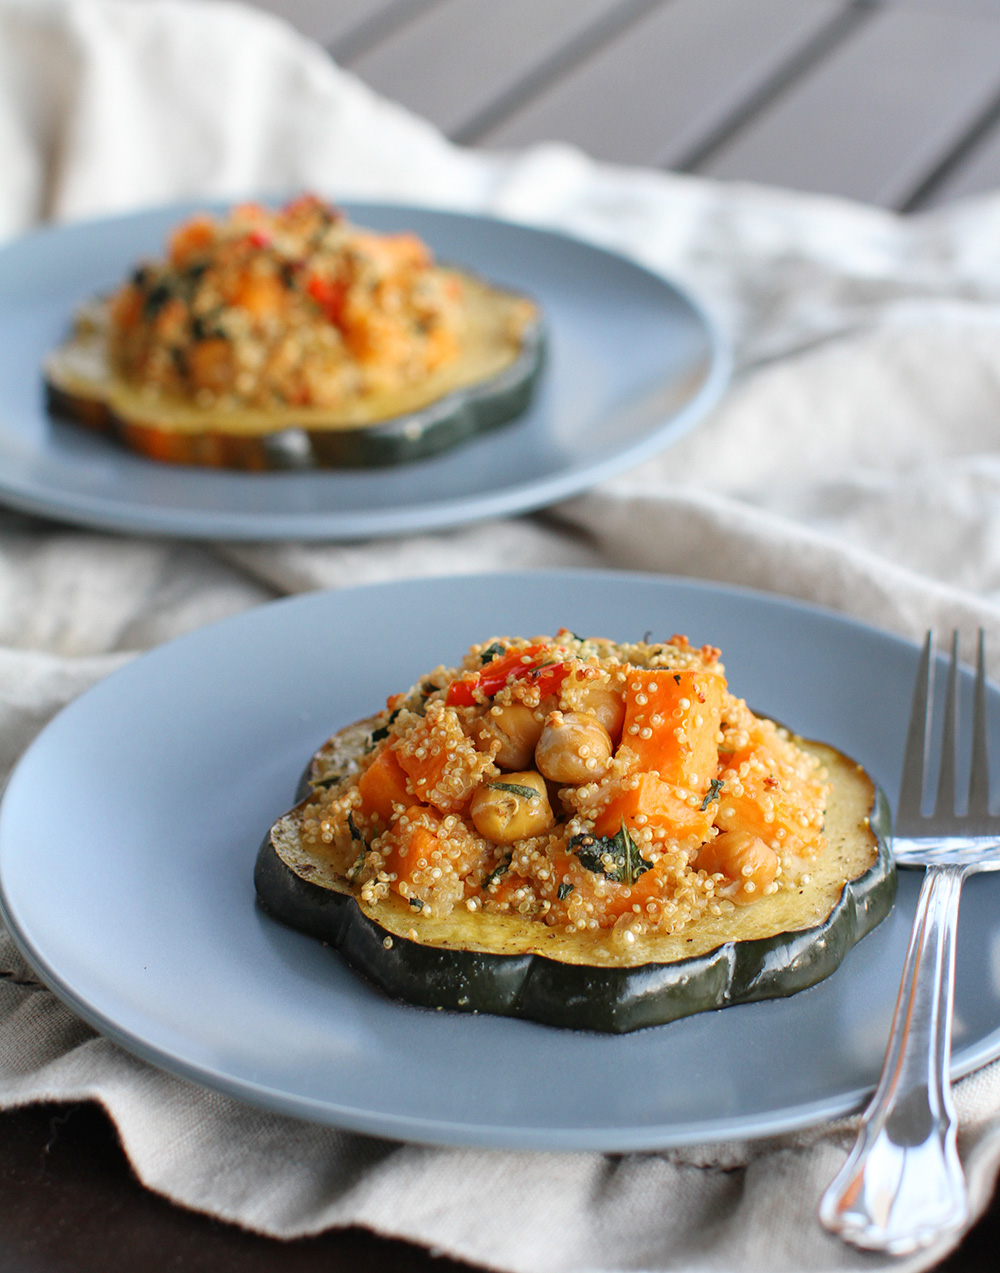 Quinoa-Stuffed-Acorn-Squash-easy-gluten-free-vegan-recipe-for-Thanksgiving